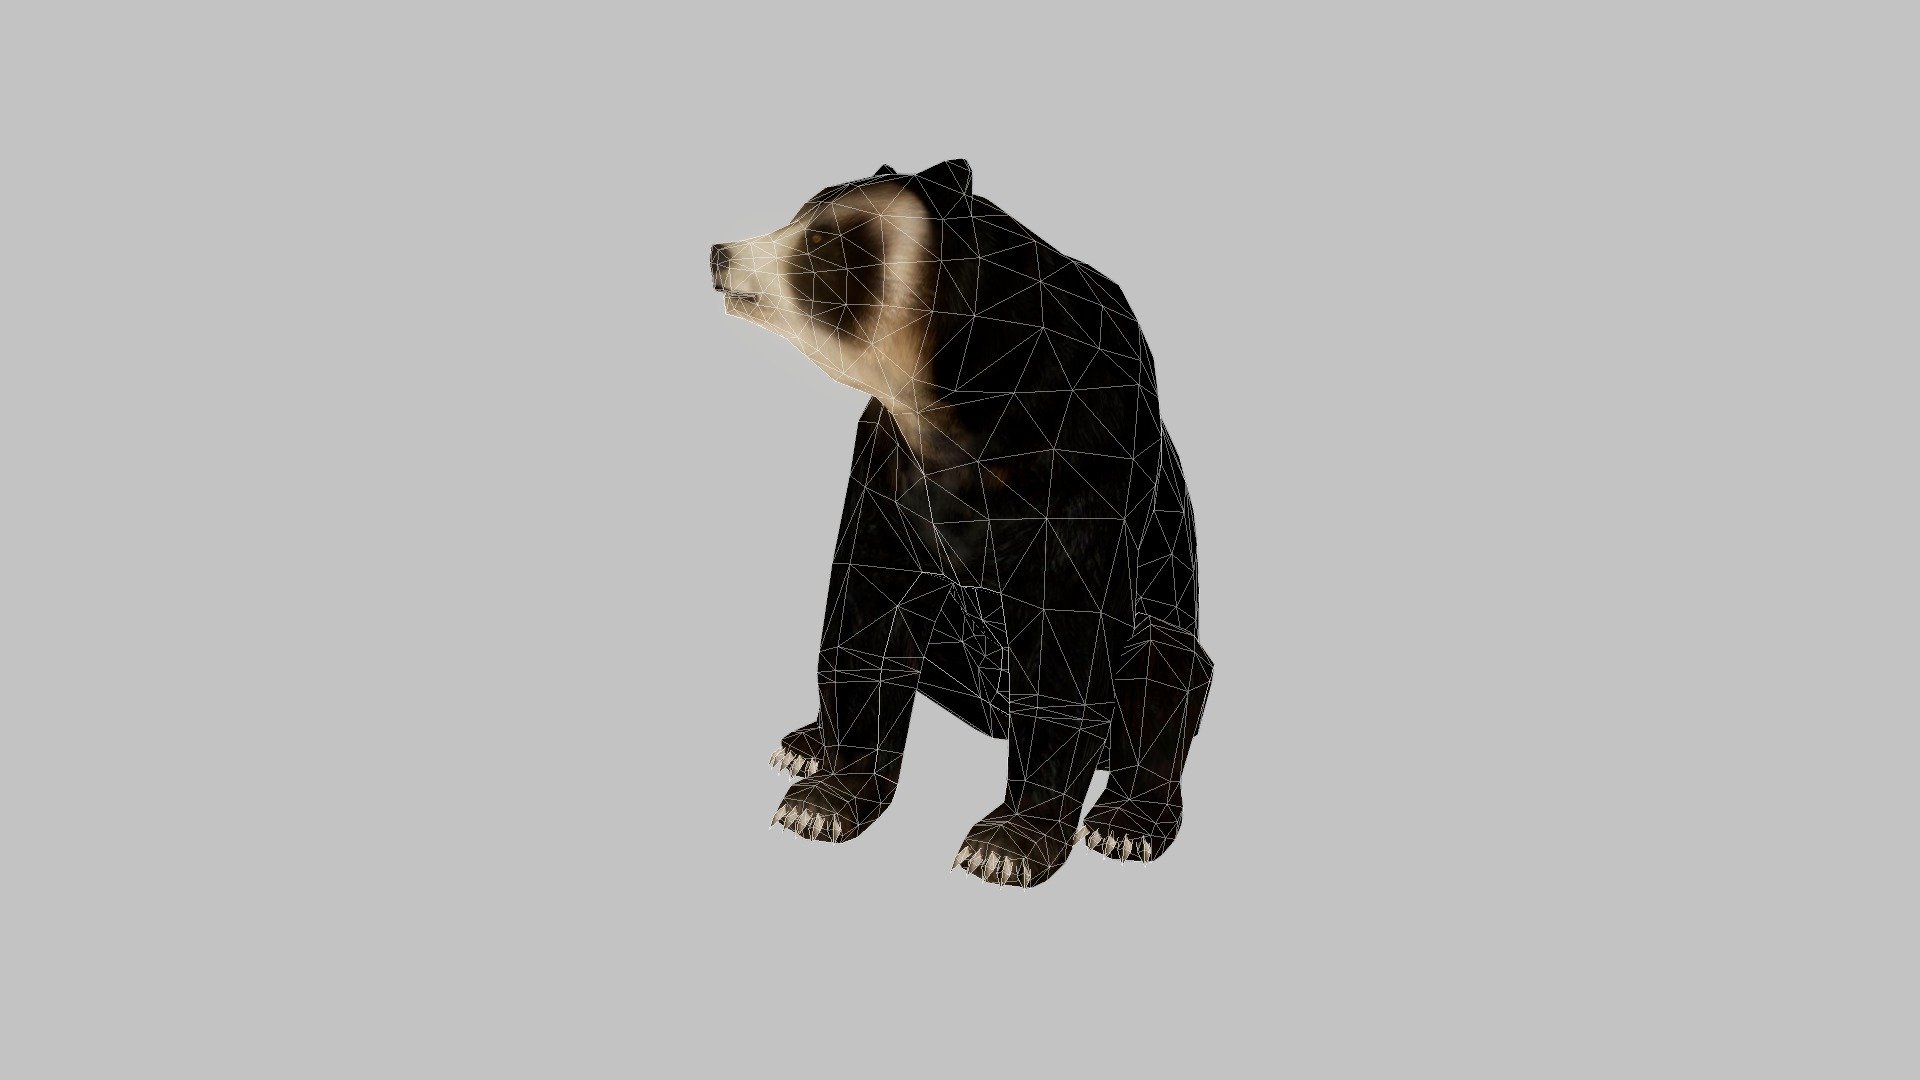 Oso de anteojos (Spectacled bear) - 3D model by hedagora (@hedagora)  [d4d754e]